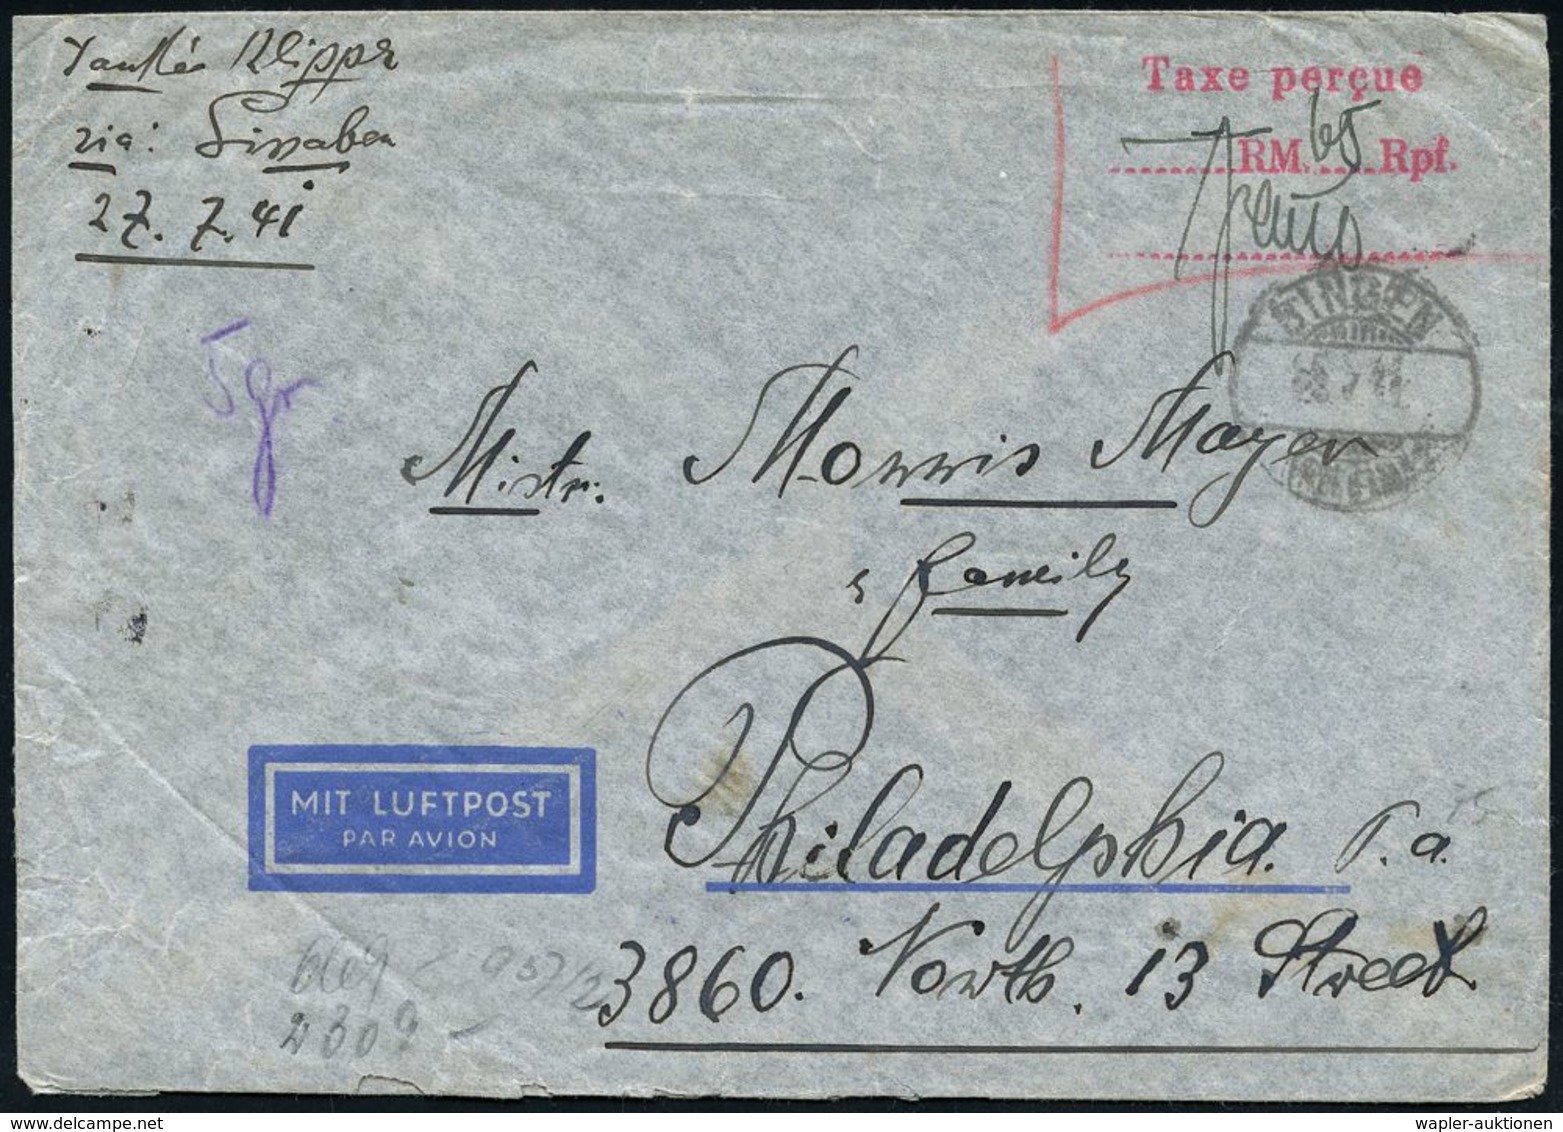 FLUGBEDARFSPOST / REGULÄRE LUFTPOST / FRANKATUREN / PORTOSTUFEN : BINGEN/ (RHEIN) 1941 (28.7.) 1K-Gitter + Roter 3L: Tax - Altri (Aria)